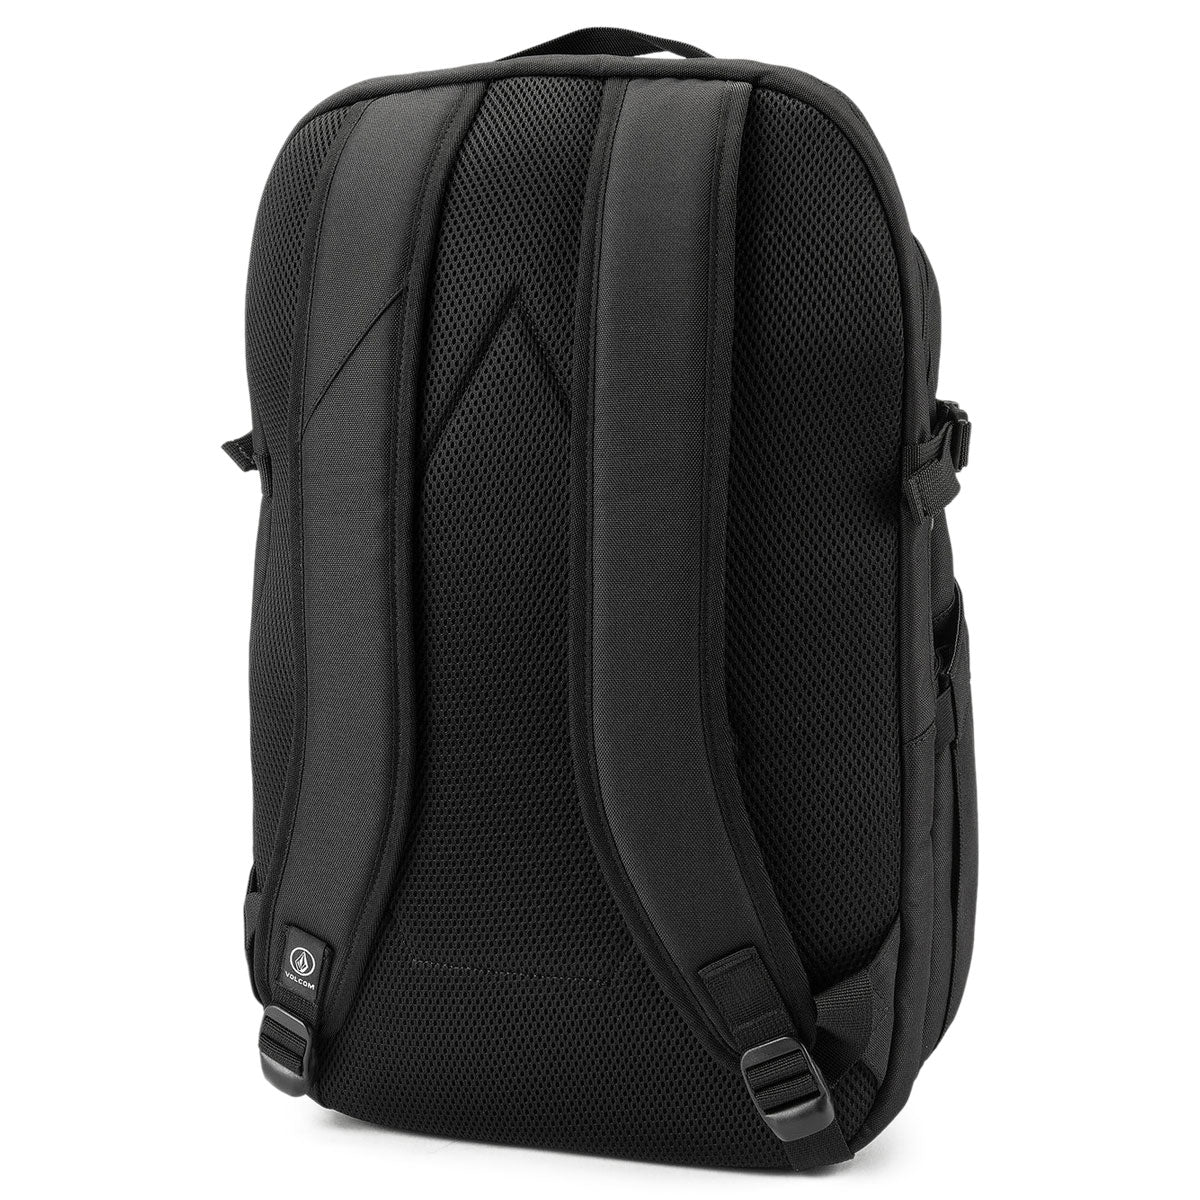 Volcom Roamer Backpack - Rinsed Black image 2